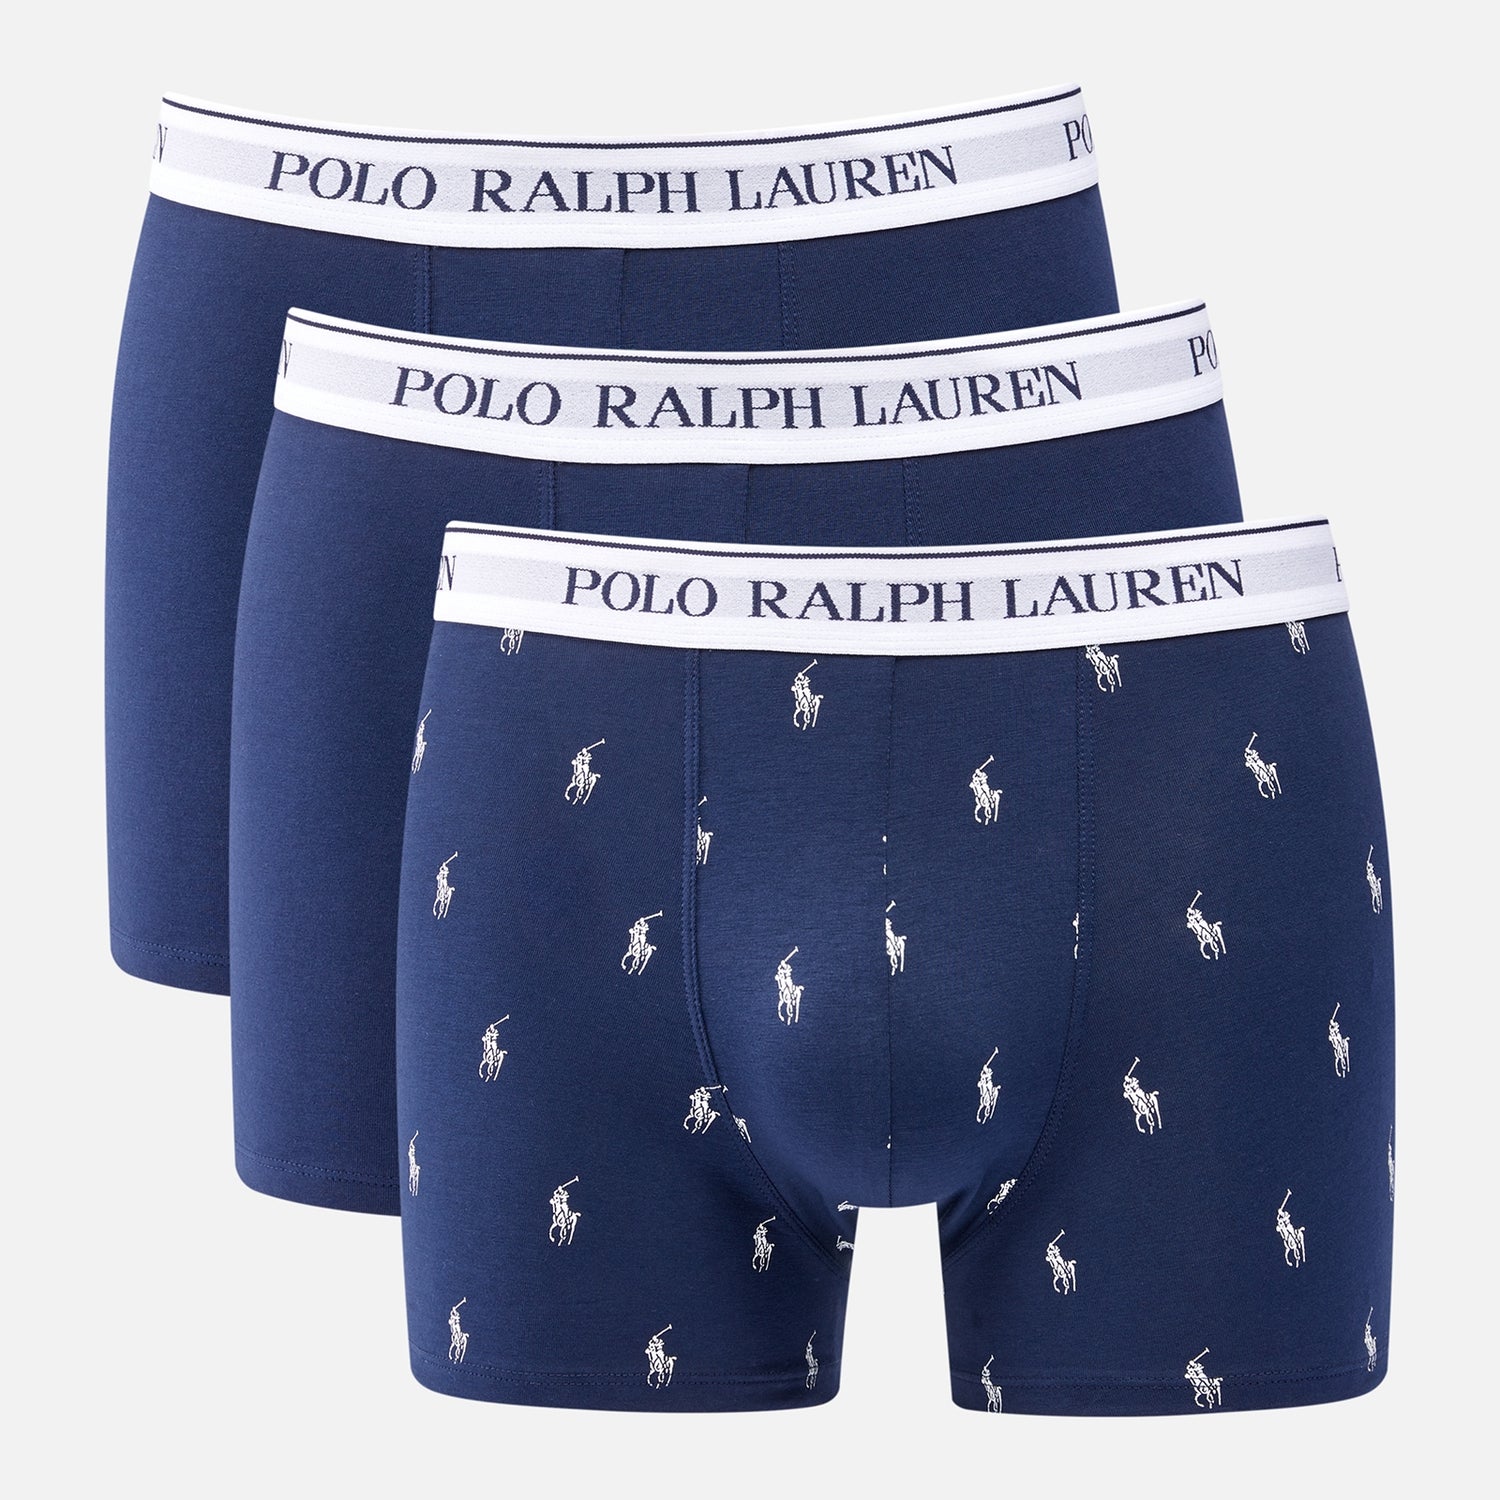 Polo Ralph Lauren 3er-Pack klassische Boxer Briefs - Navy/Navy Allover/Navy